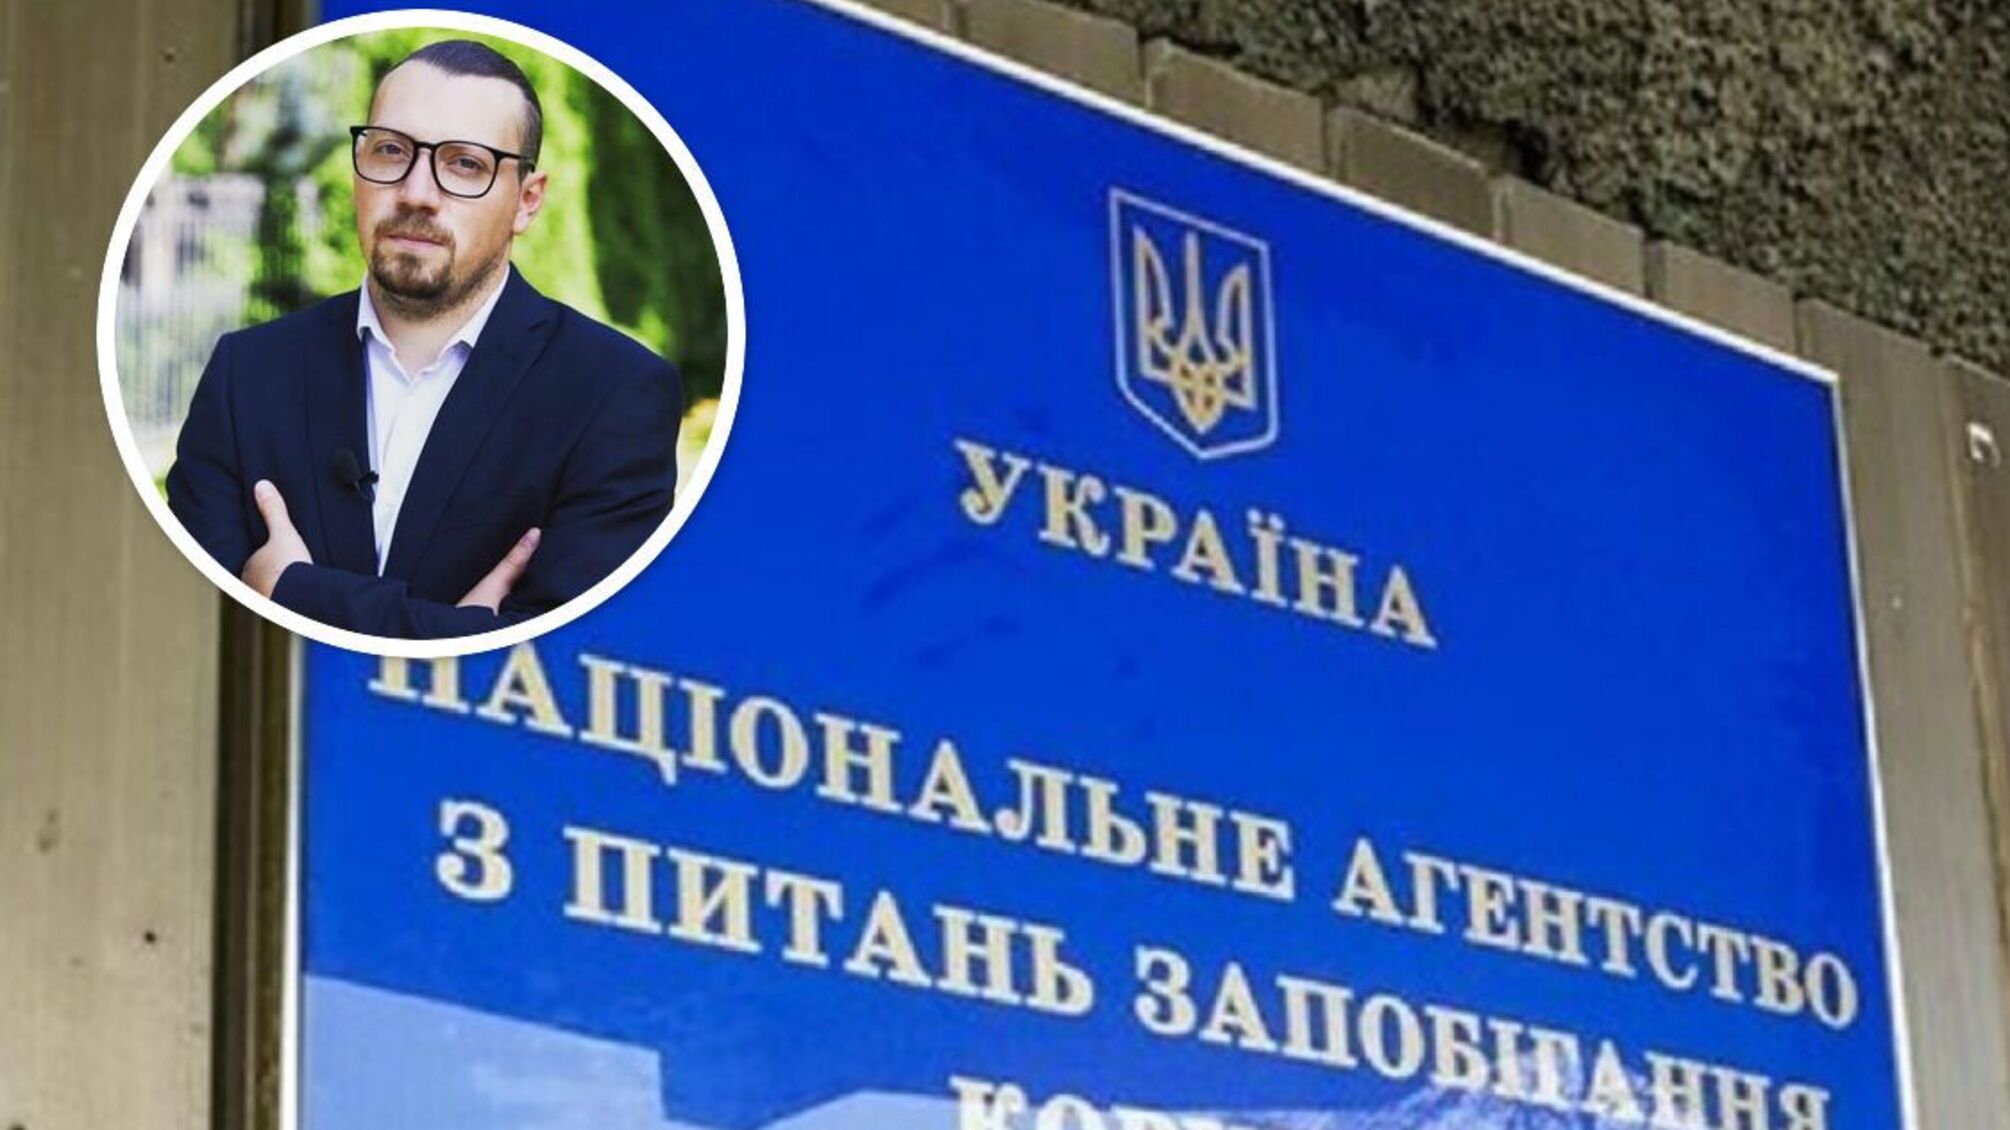 Крымской недвижимостью и пророссийскими связями нардепа Безгина займется НАПК и прокуратура: 'СтопКор' направил запросы